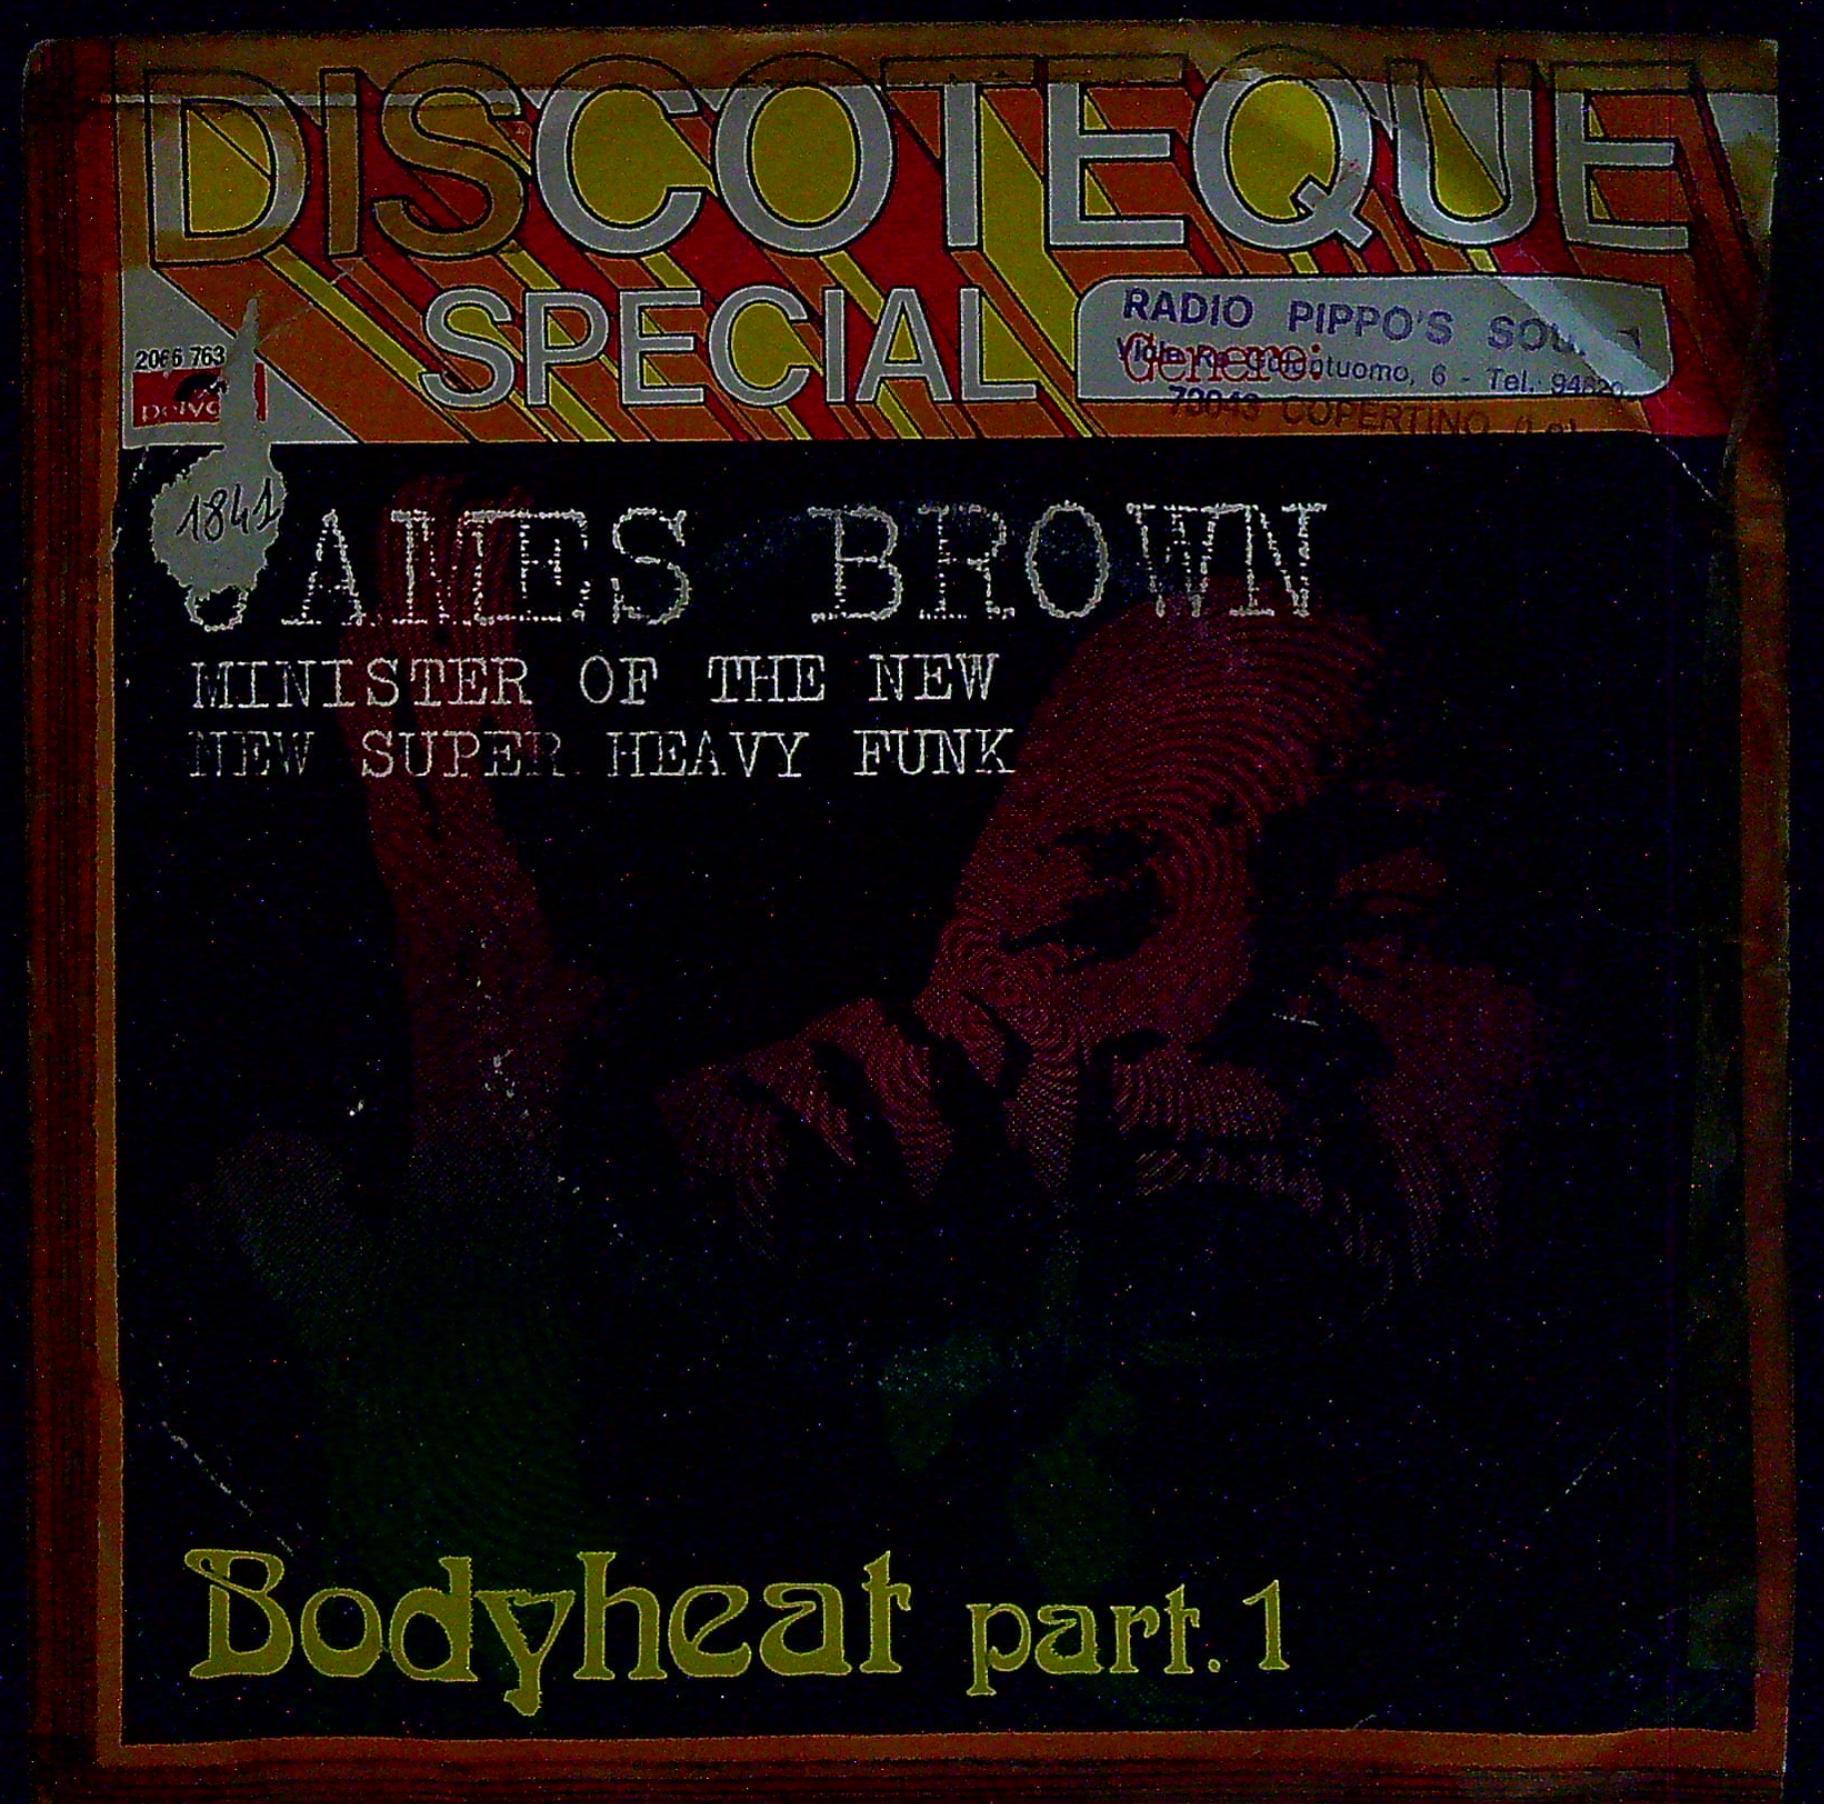 84422 45 giri - James Brown - Bodyheat